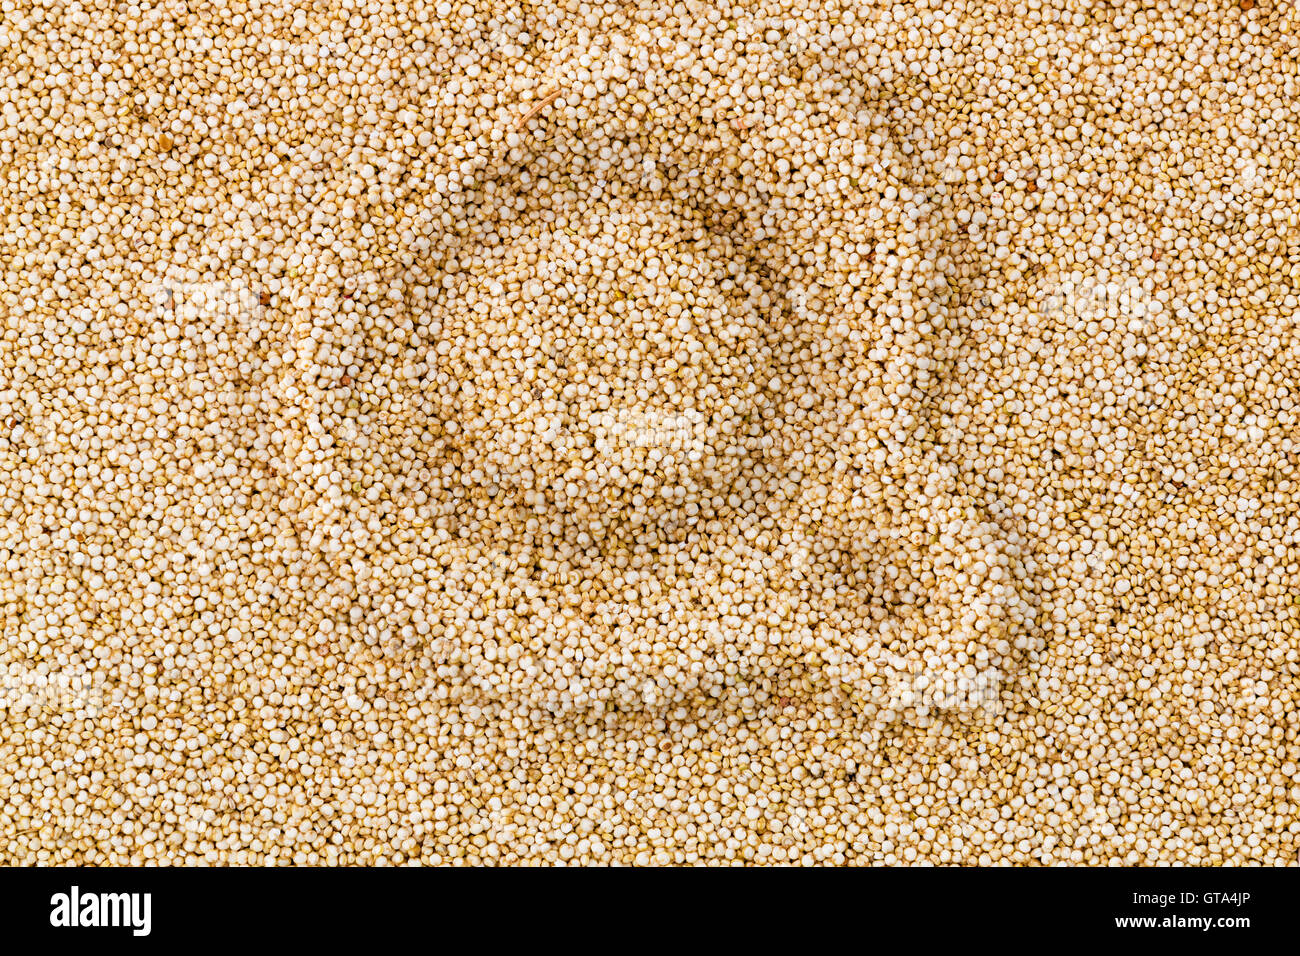 Lettera Q per la quinoa disegnati a mano in uno strato di quinoa essiccati Sementi, un sano cereale ricco di proteine che è privo di glutine Foto Stock